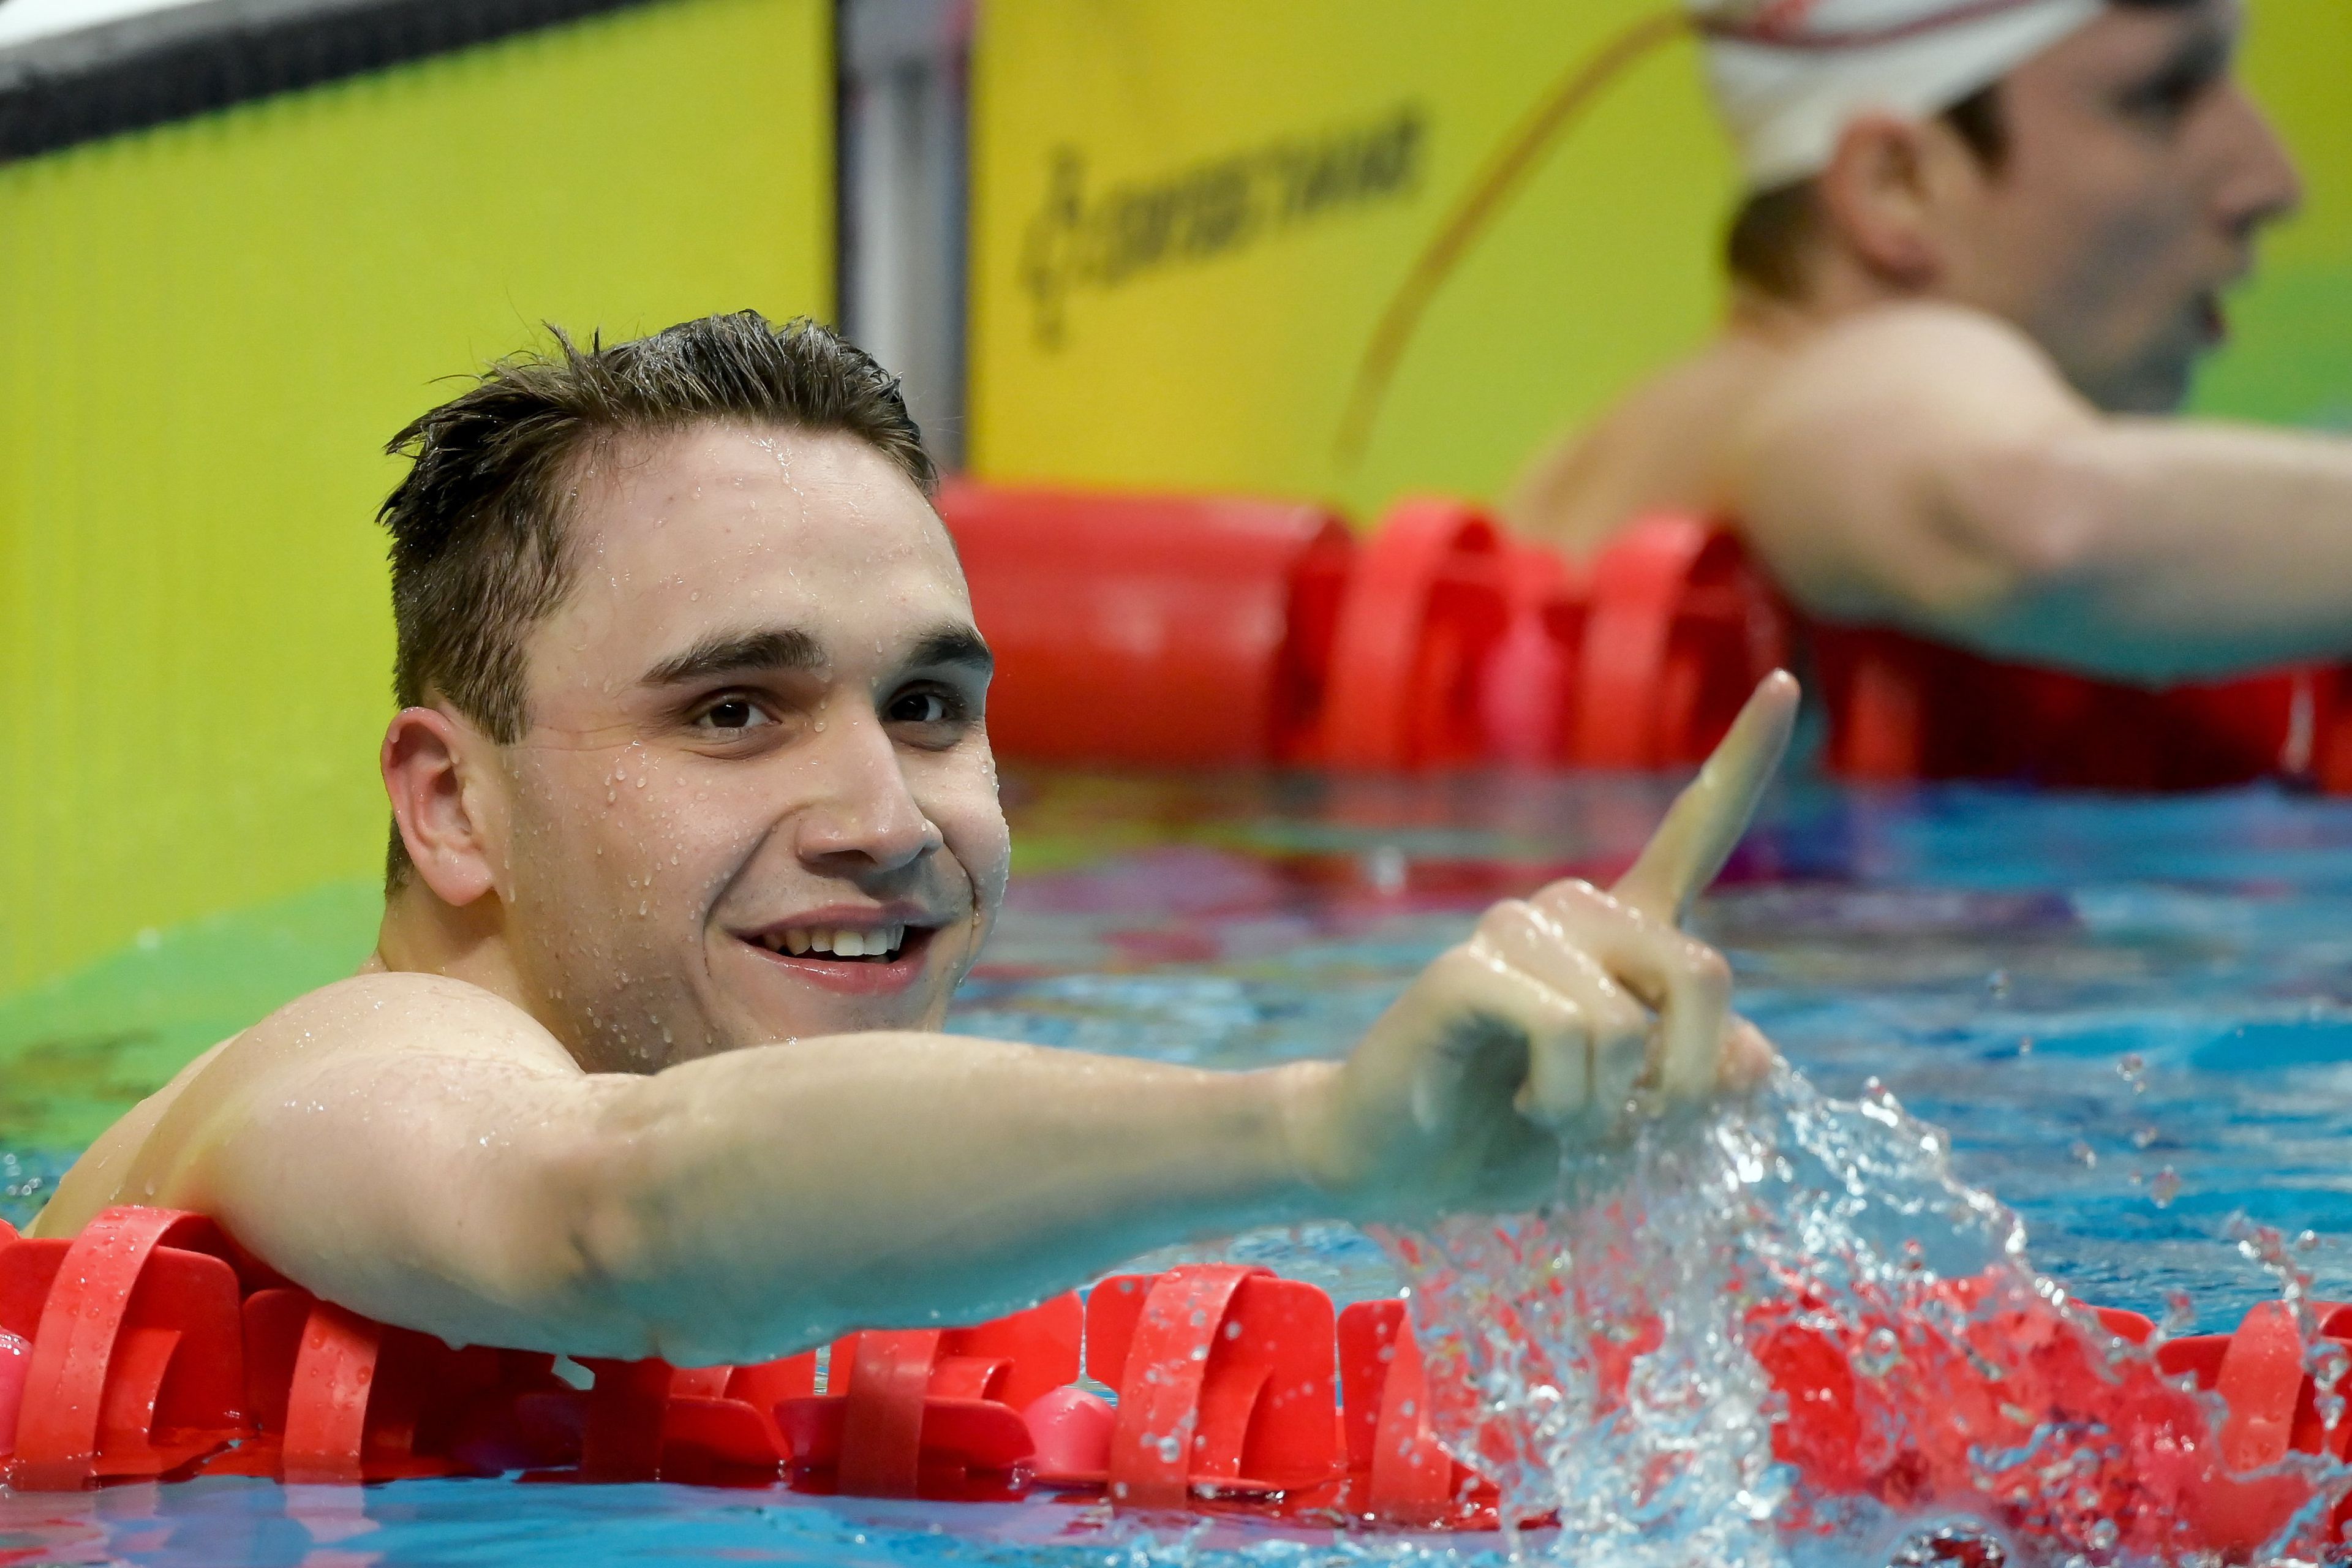 Rekordot ért el 100 m gyorson, de Milák ezzel is elégedetlen, mert szeretett volna 48 mp-en belül úszni. /Fotó: MTI/Koszticsák Szilárd